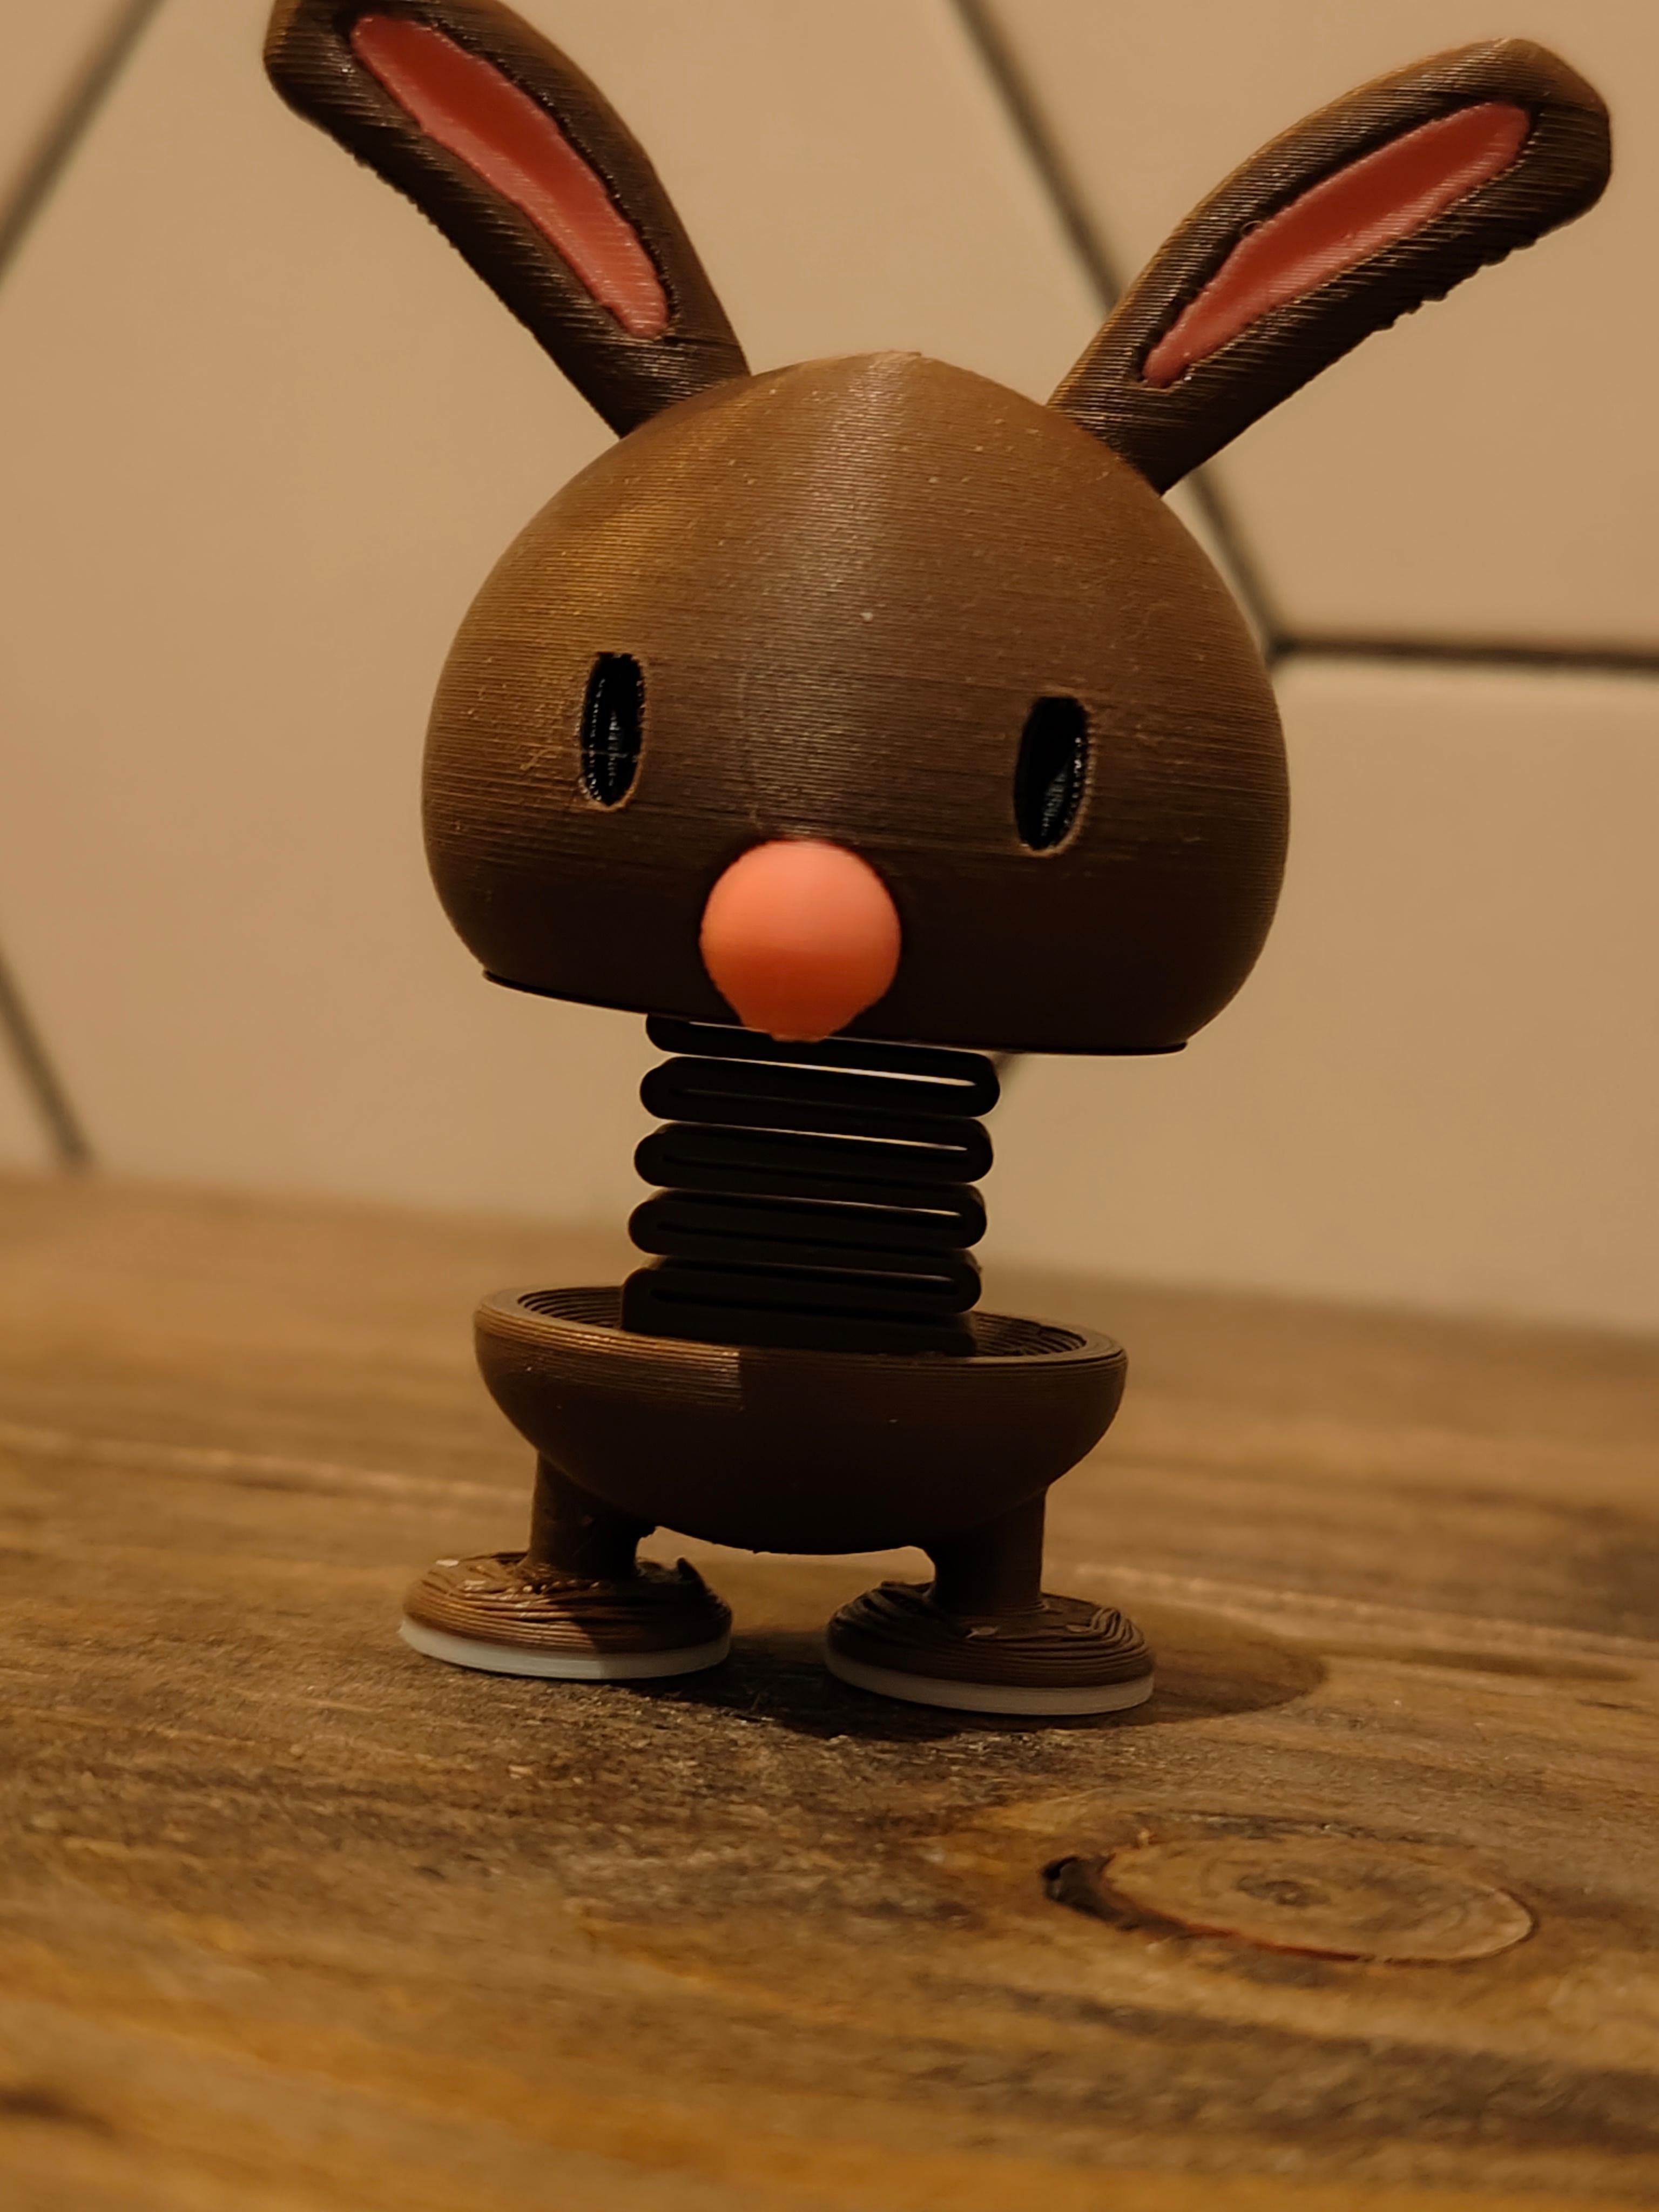 Bunny Springie 3d model